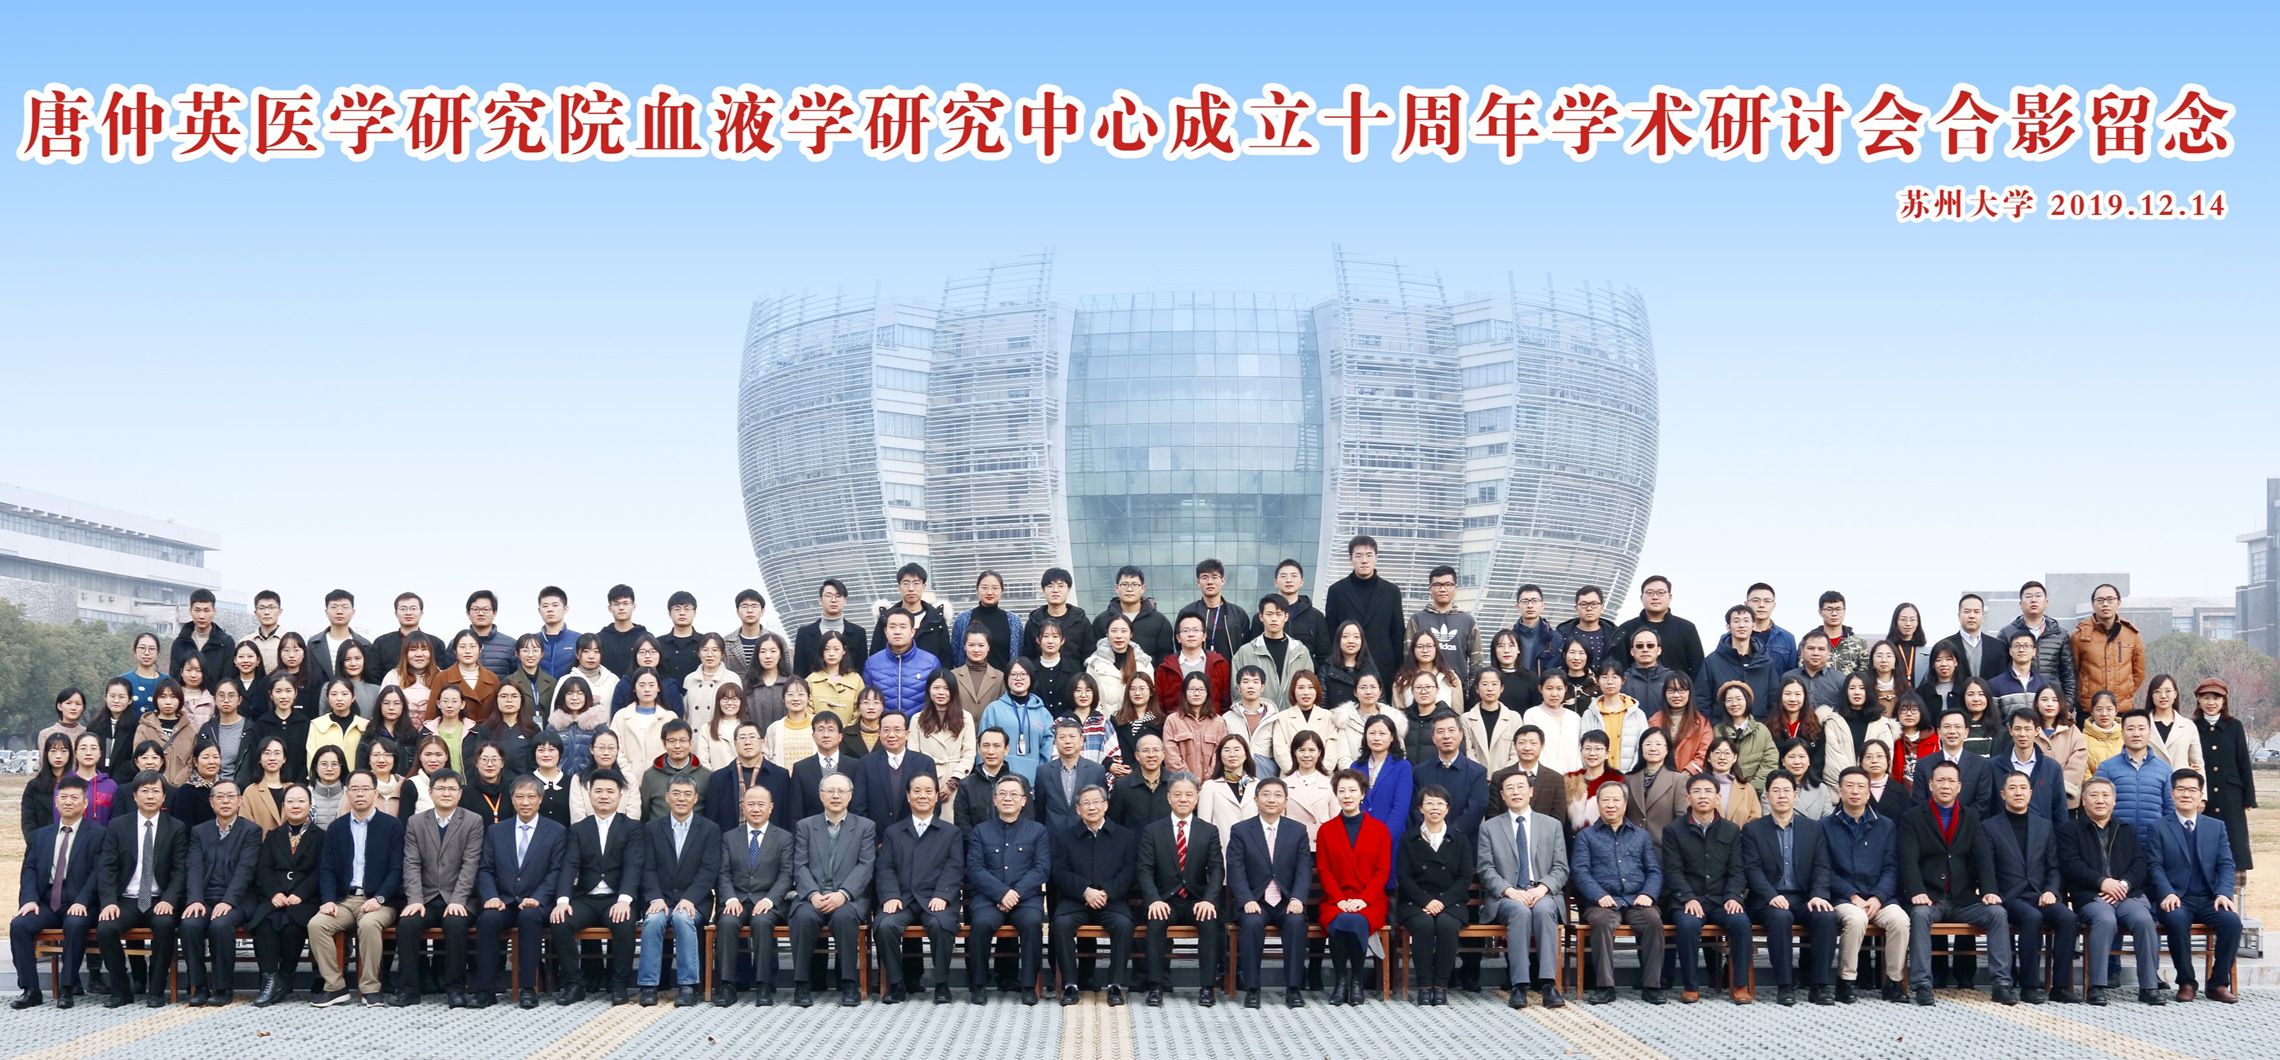  苏州大学唐仲英研究院血液学研究中心成立十周年研讨会